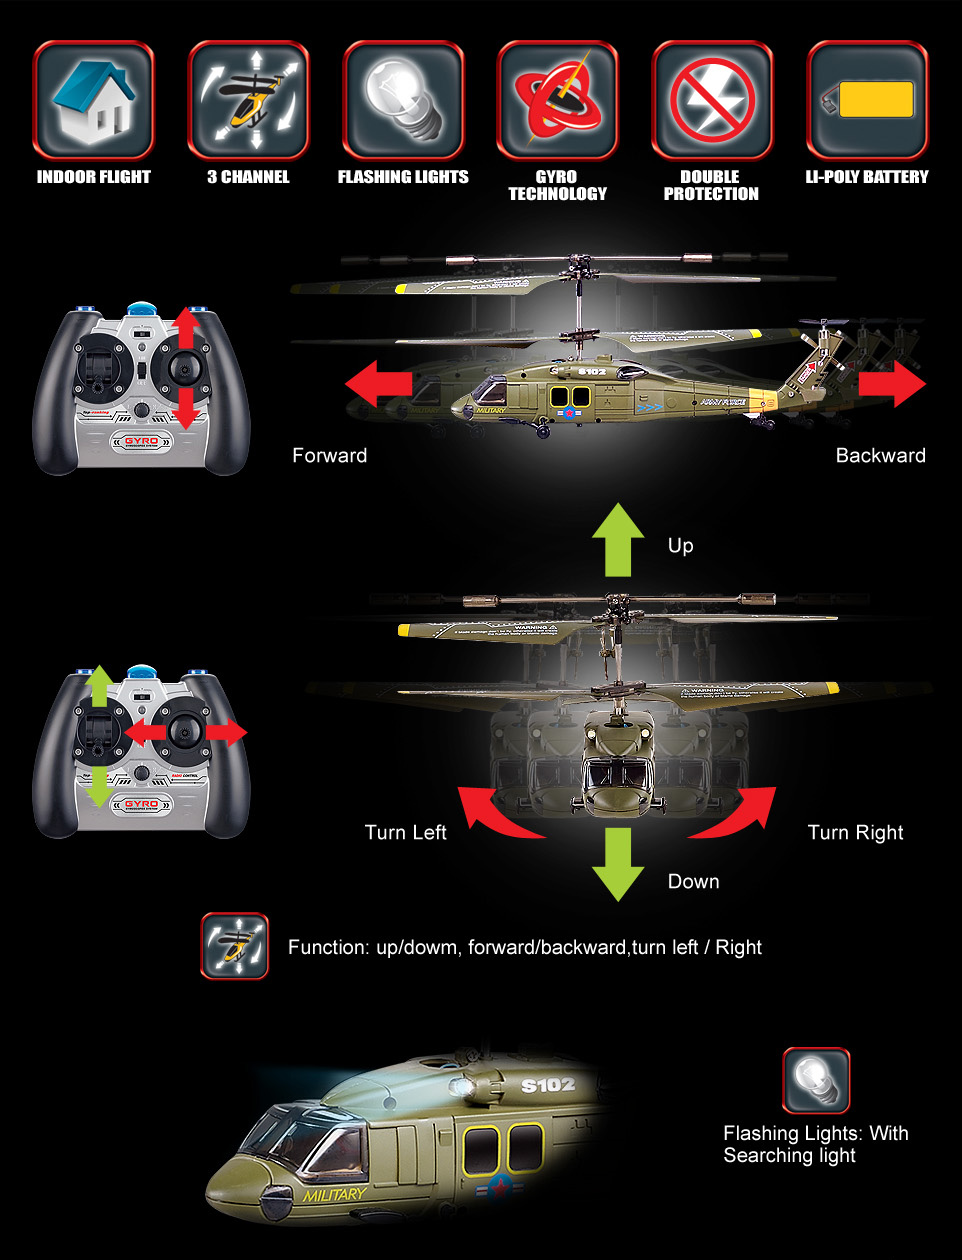 Радиоуправляемый мини вертолет гироскоп Hawk   